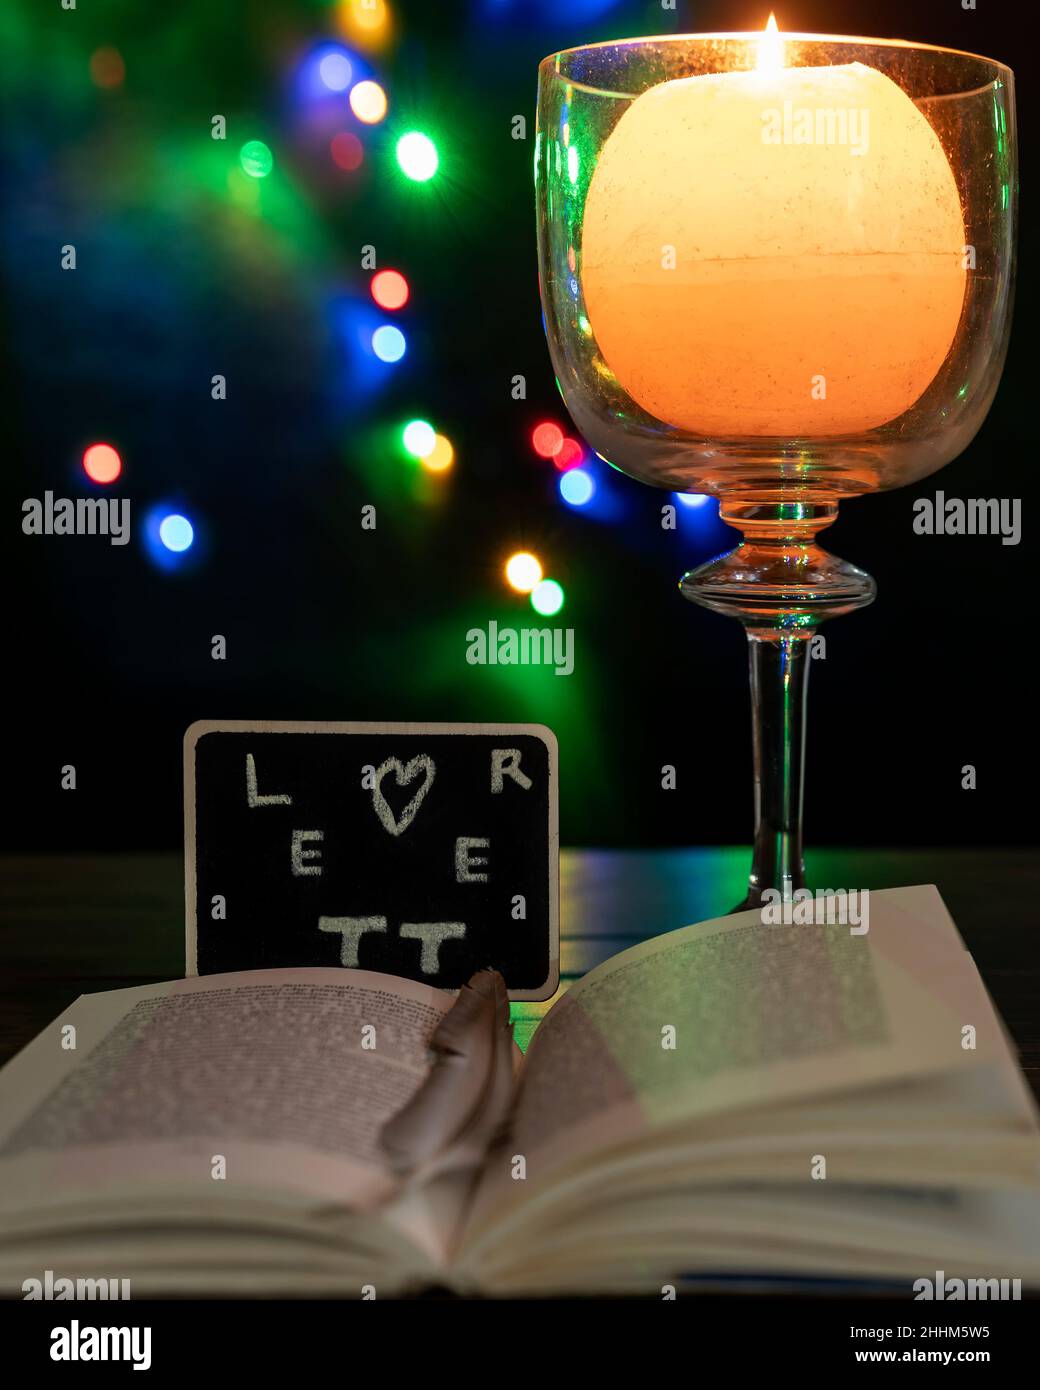 Aus einem Buch scheint ein Schiefer mit dem Wort „Brief“ zu kommen, daneben eine brennende Kerze und Bokeh-Lichter im Hintergrund Stockfoto